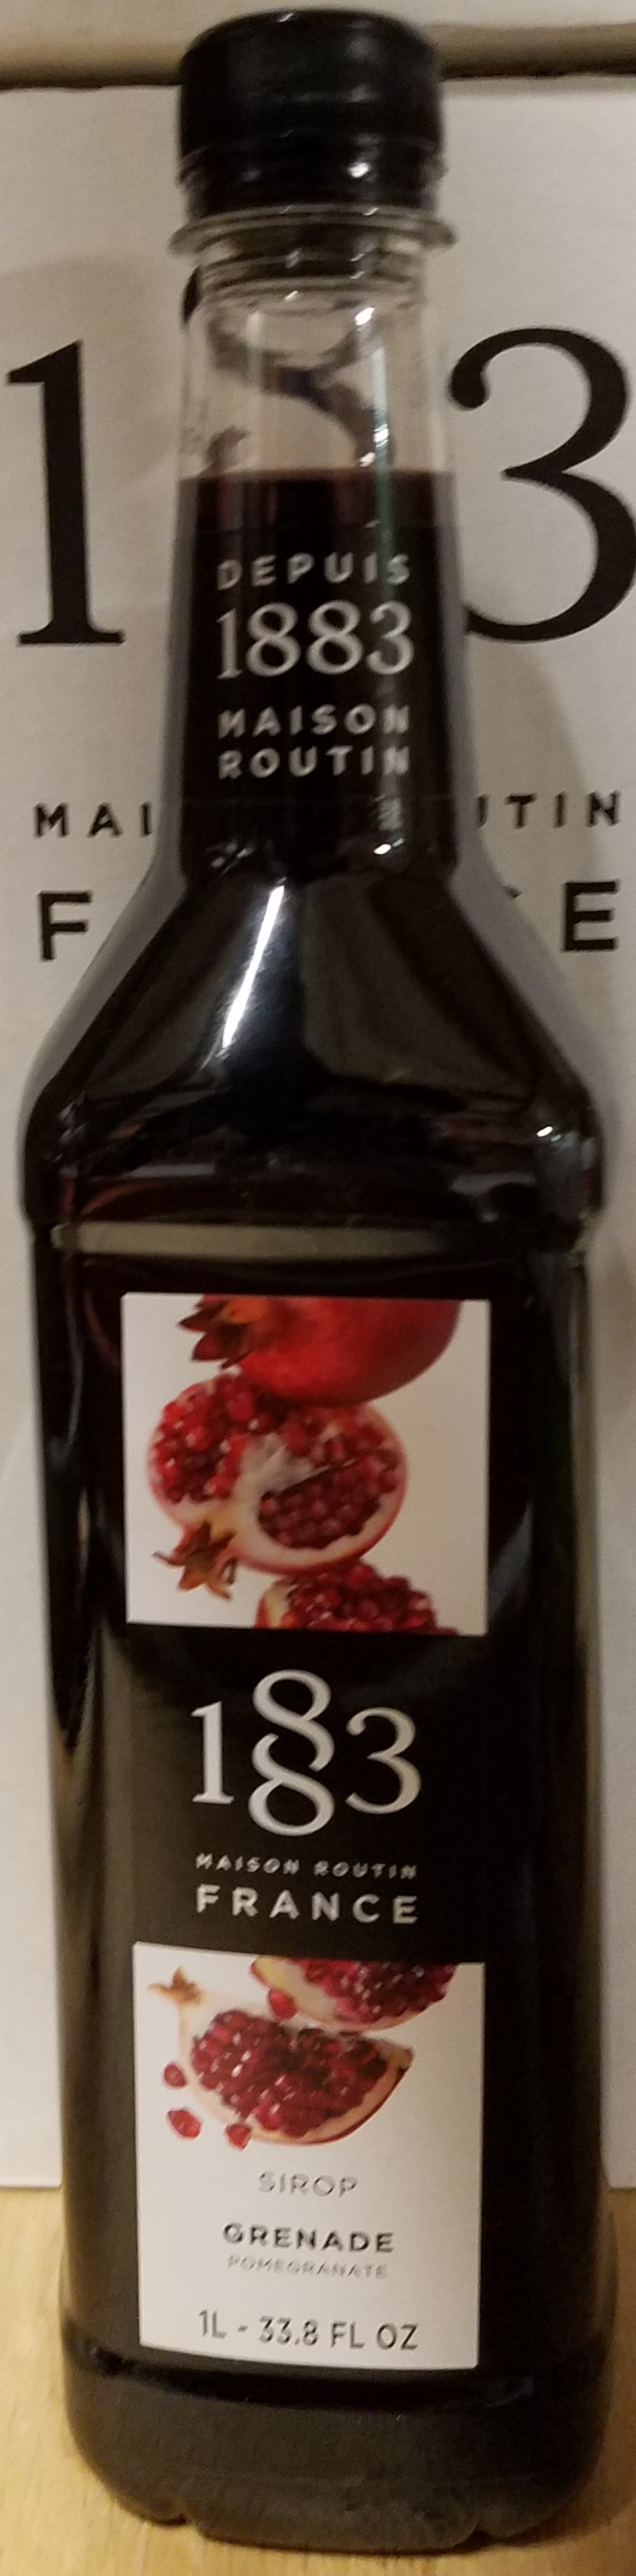 1883 Maison Routin, Pomegranate 6/1L Bottle - Sold by EA